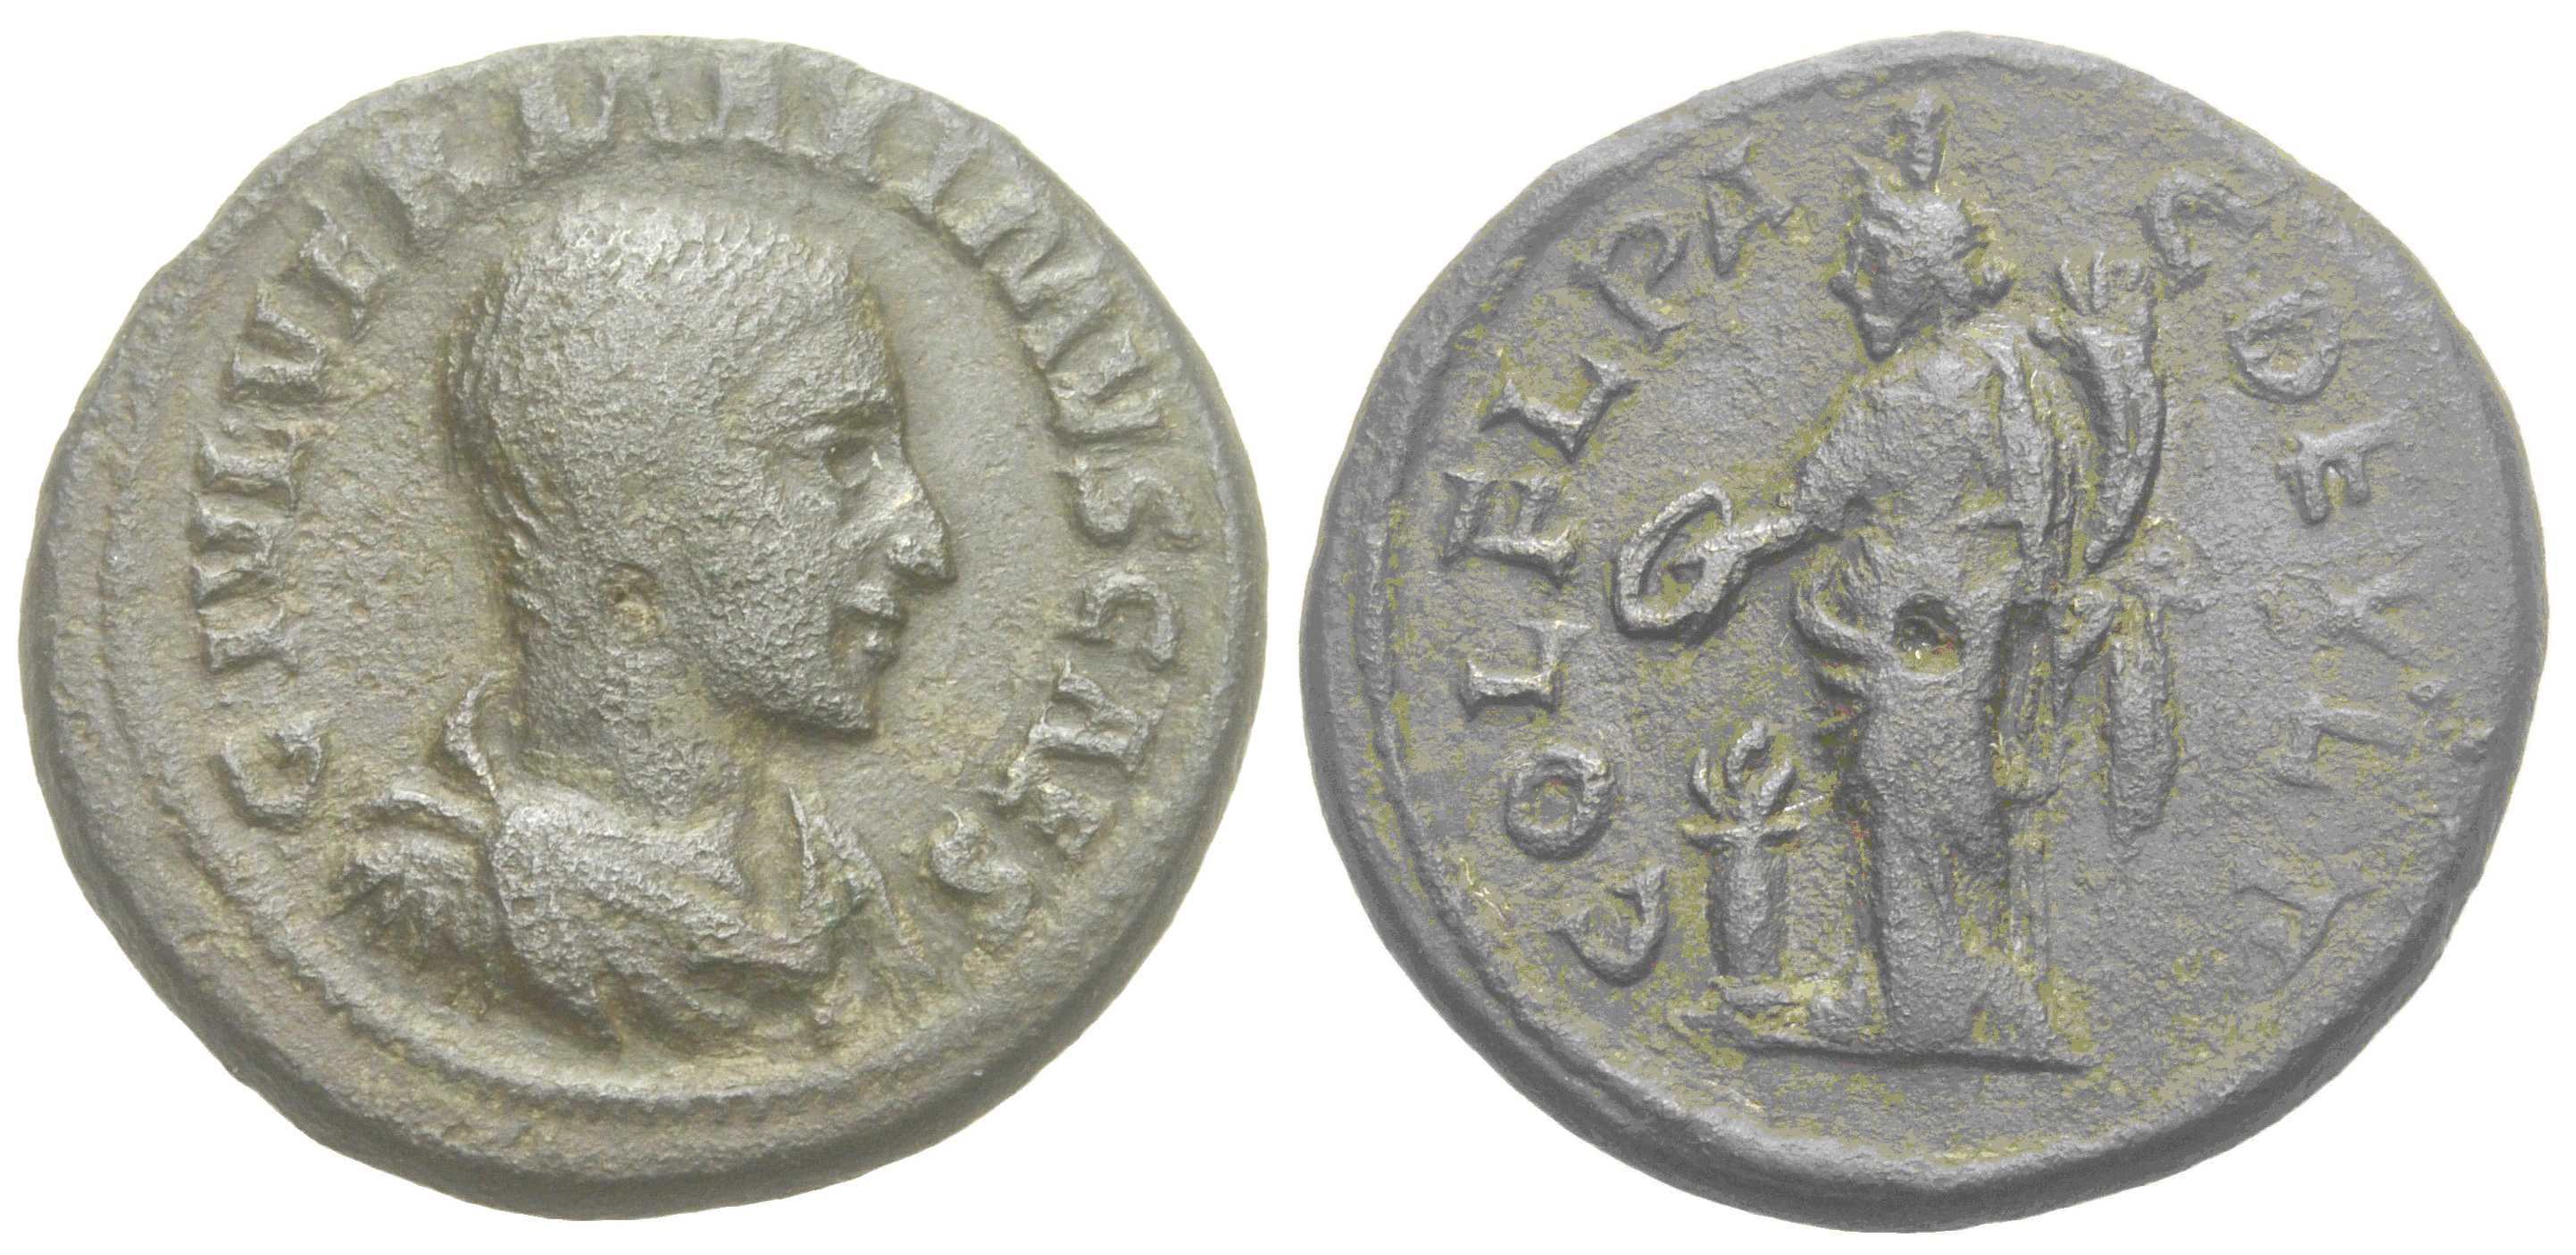 5525 Deultum Thracia Maximus AE